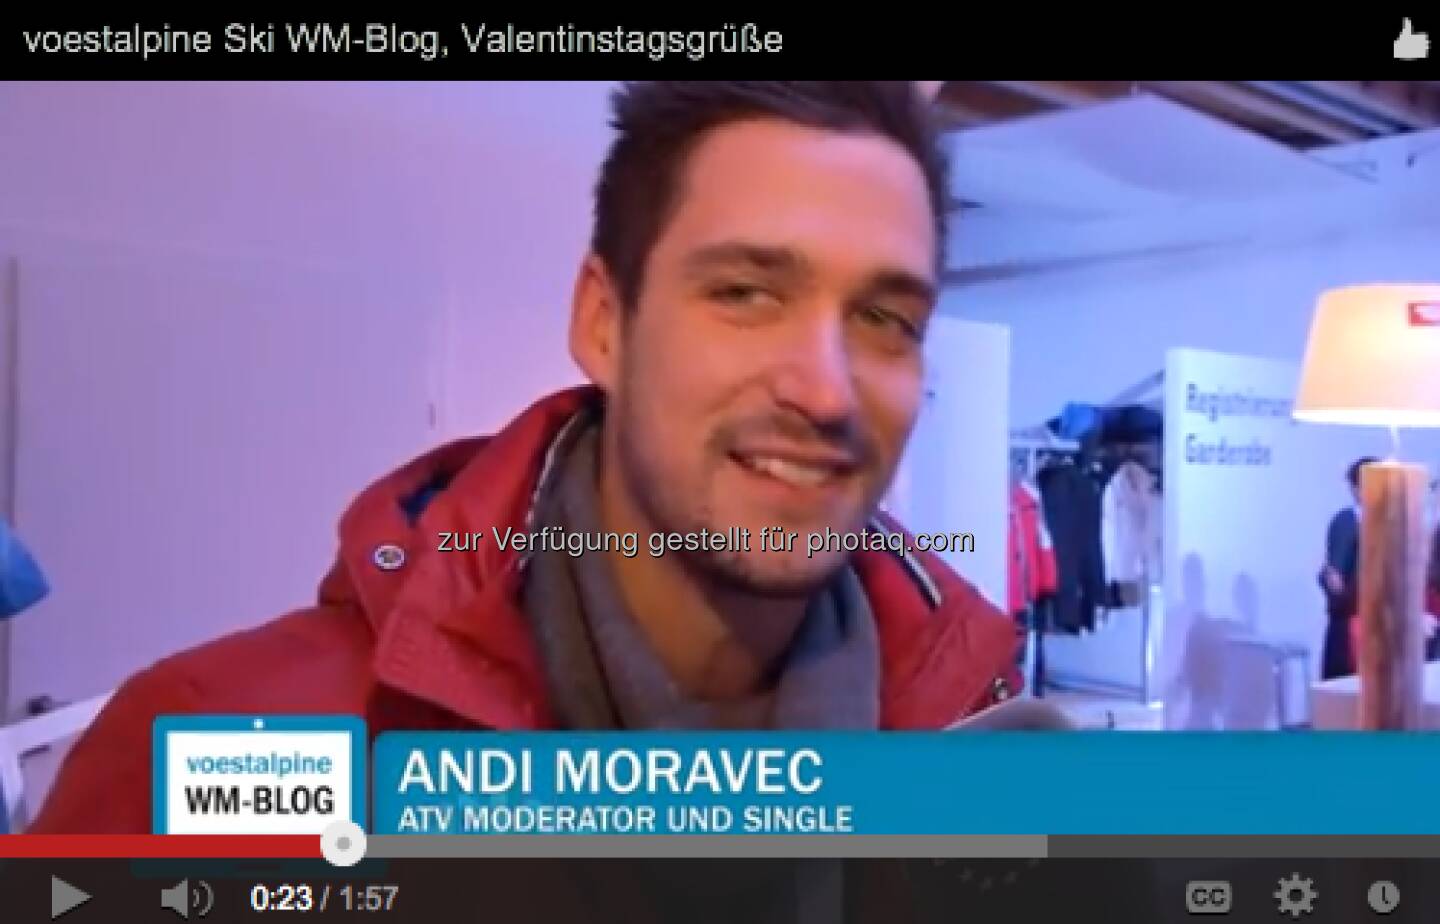 Andi Moravec (ATV) mit Valentinstags-Grüssen http://voestalpine-wm-blog.at/2013/02/14/liebesgefluster-in-schlaming/#.URz8B47aK_Q